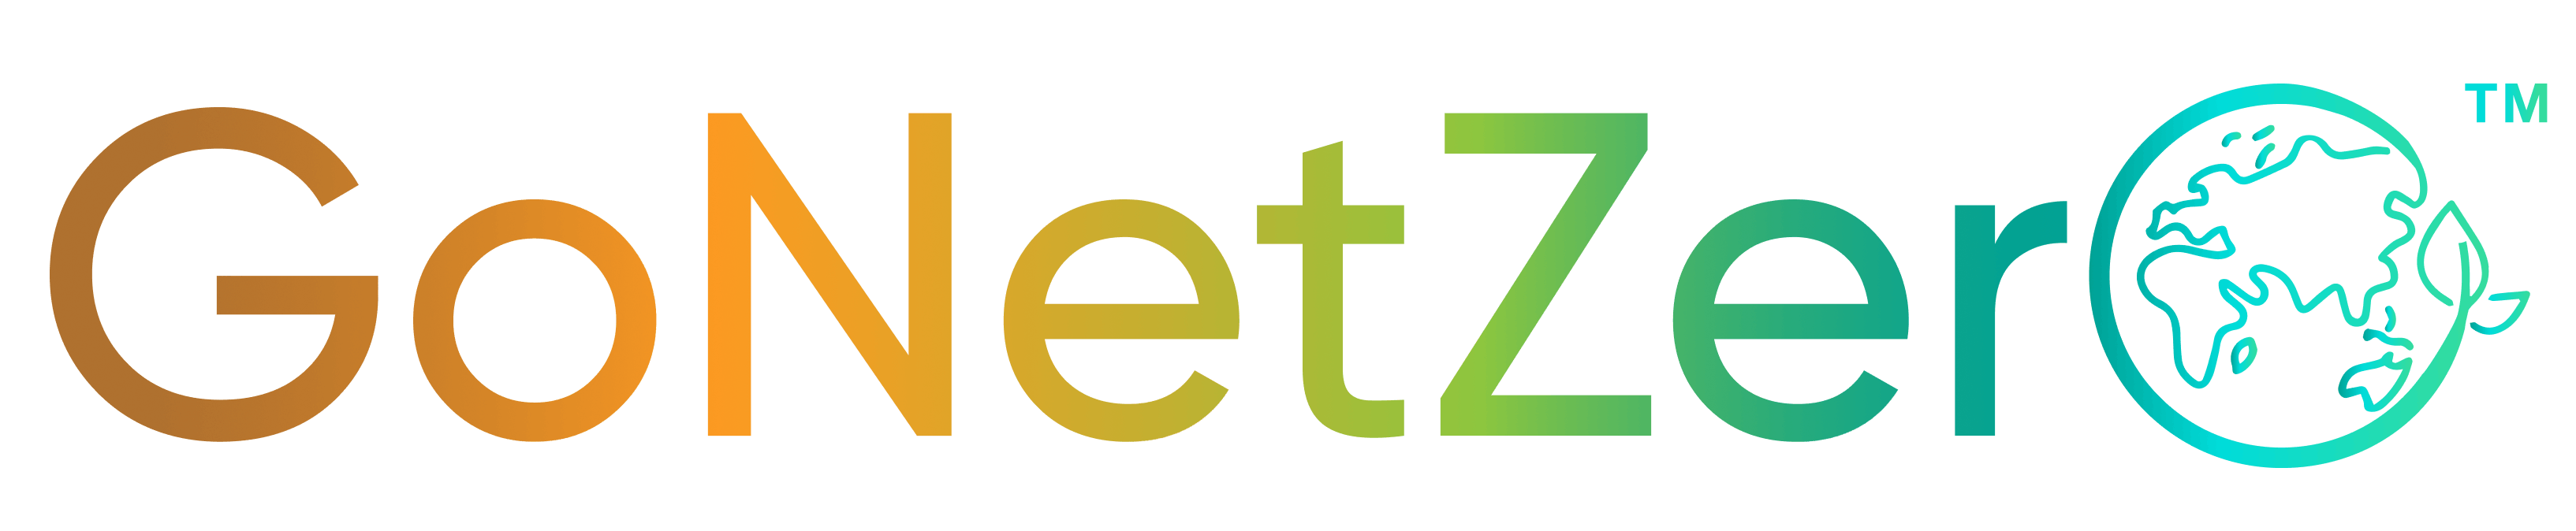 Go Net Zero Pte Ltd